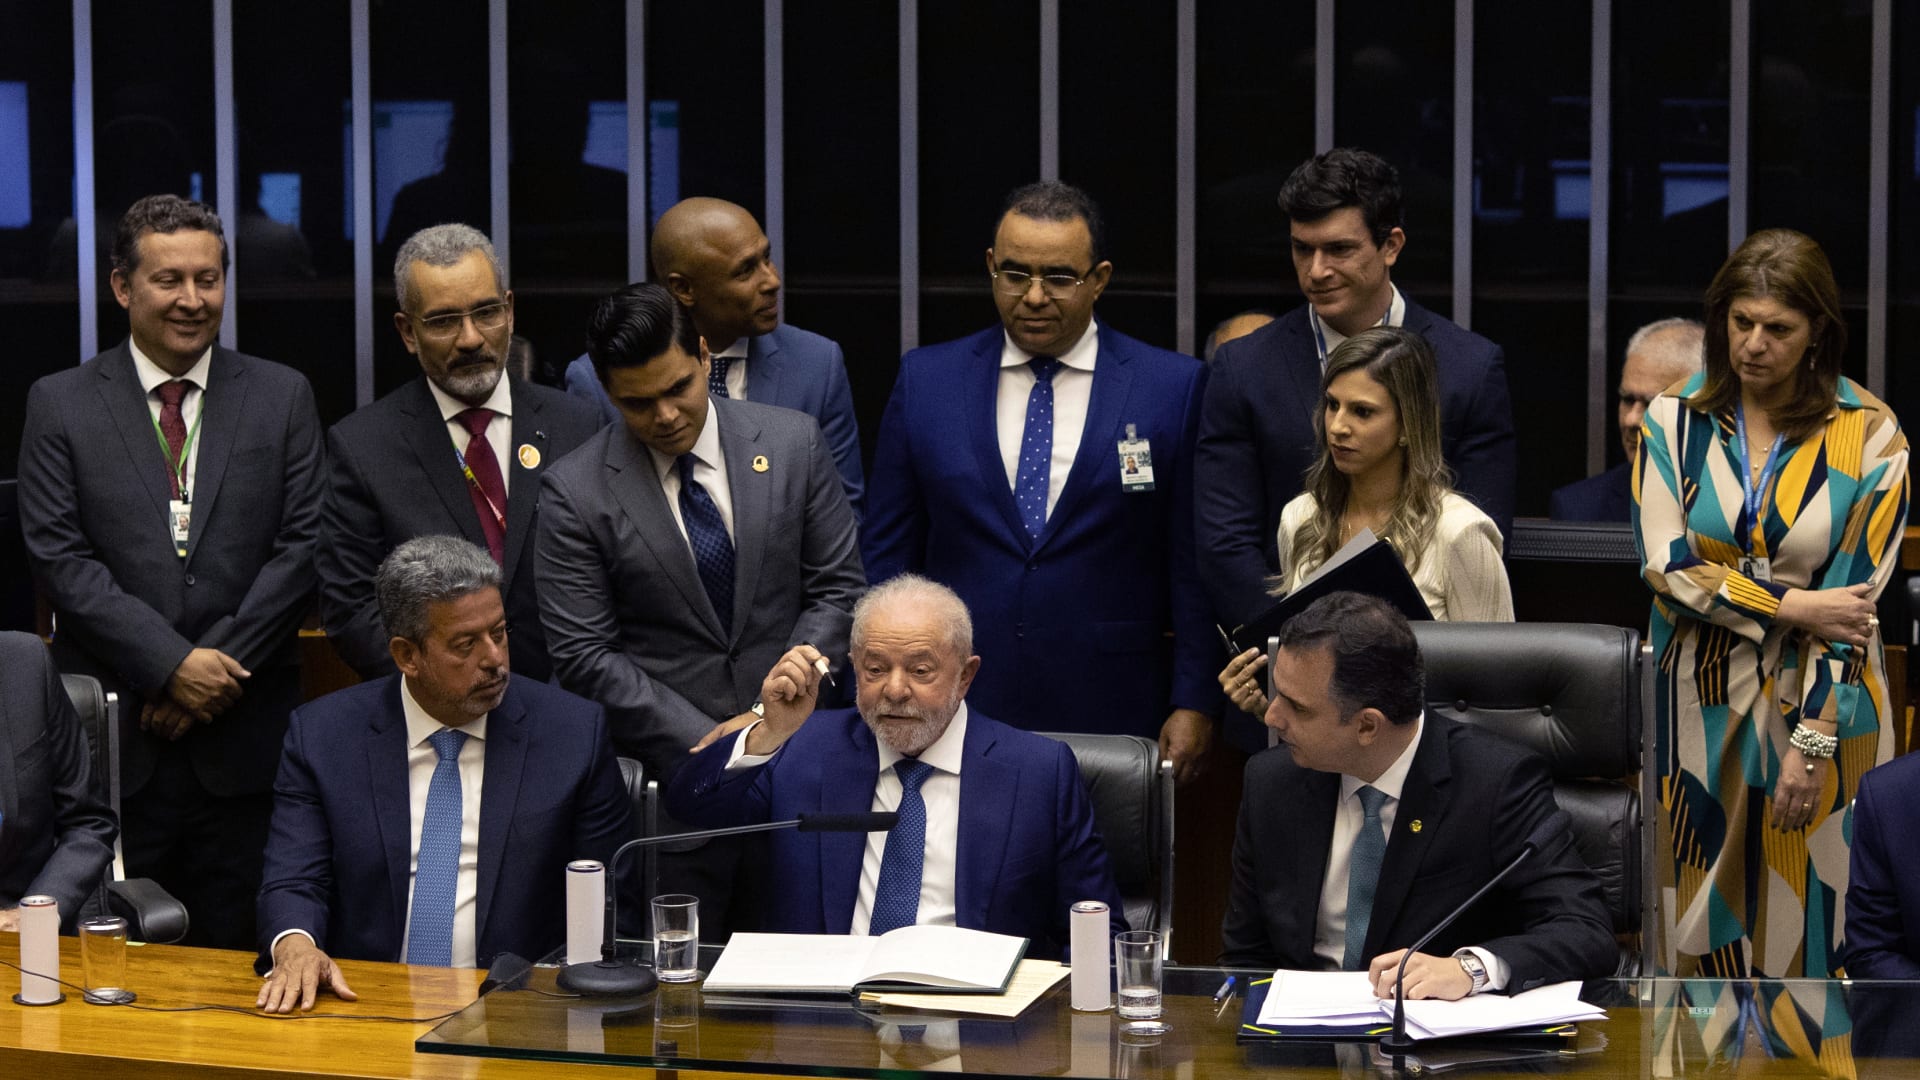 وسط التصفيق والهتاف.. شاهد لحظة أداء لولا دا سيلفا اليمين رئيسًا للبرازيل